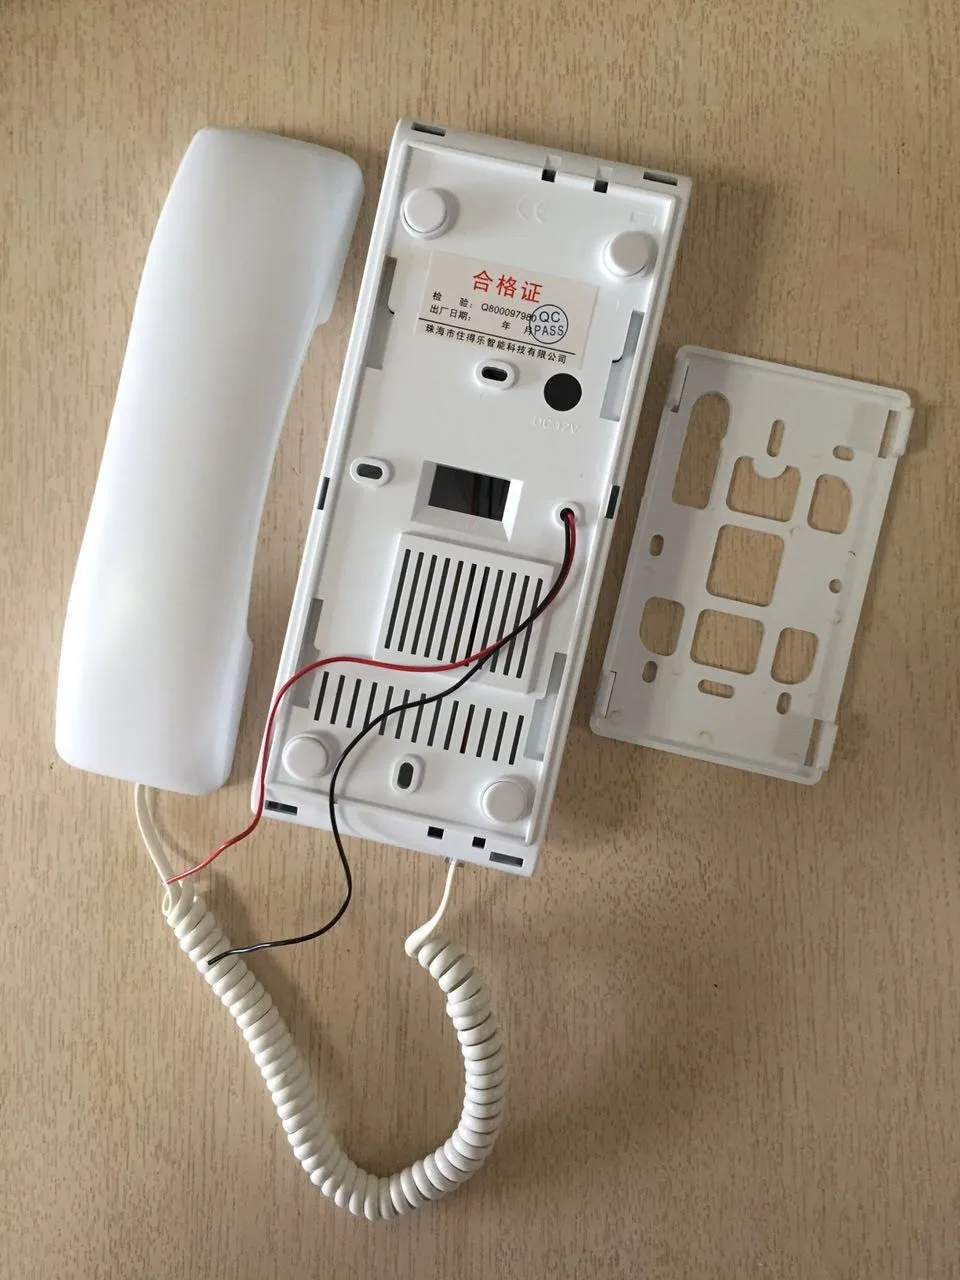 ZHUDELE Высокое качество 6-домофон для квартиры системы безопасности дома аудио дверной значок наборы для телефона 008A внутренний блок